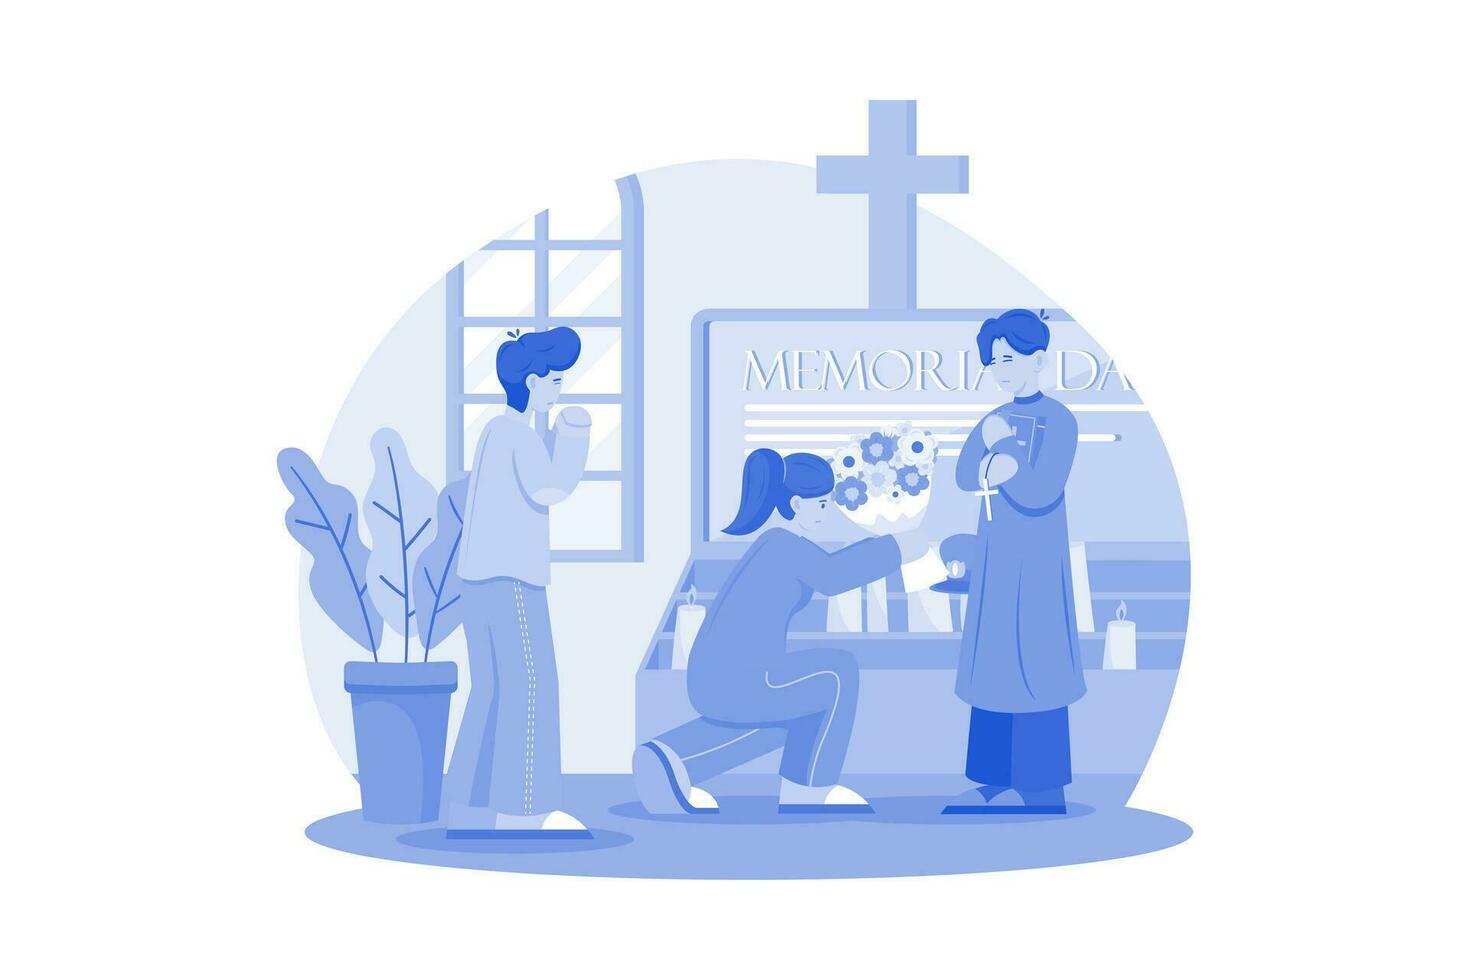 kerken houden speciaal Diensten naar herdenken die wie hebben gemaakt de ultieme offer. vector